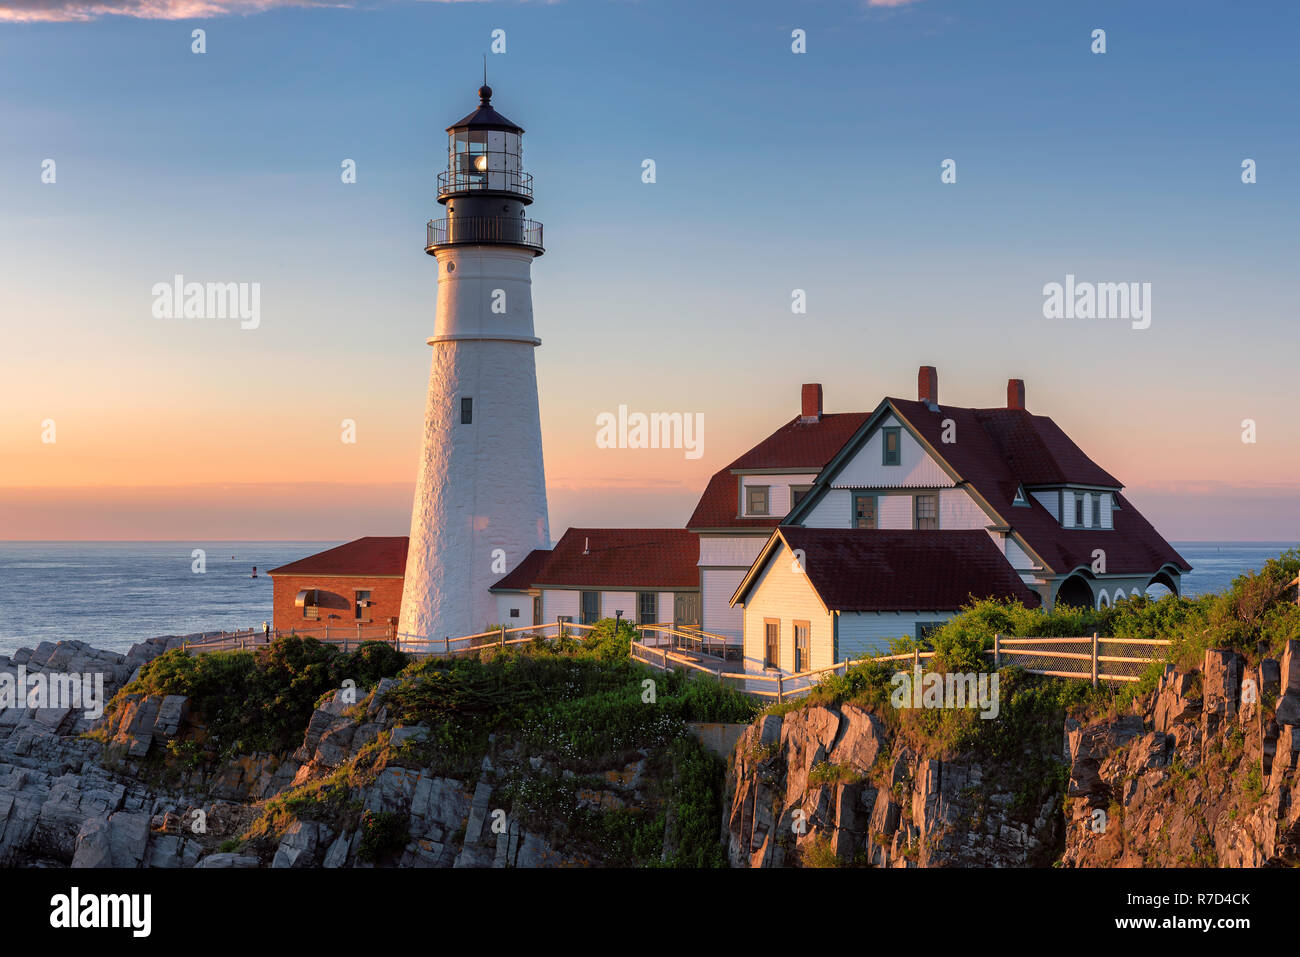 Portland Lighthouse at sunrise Stock Photo